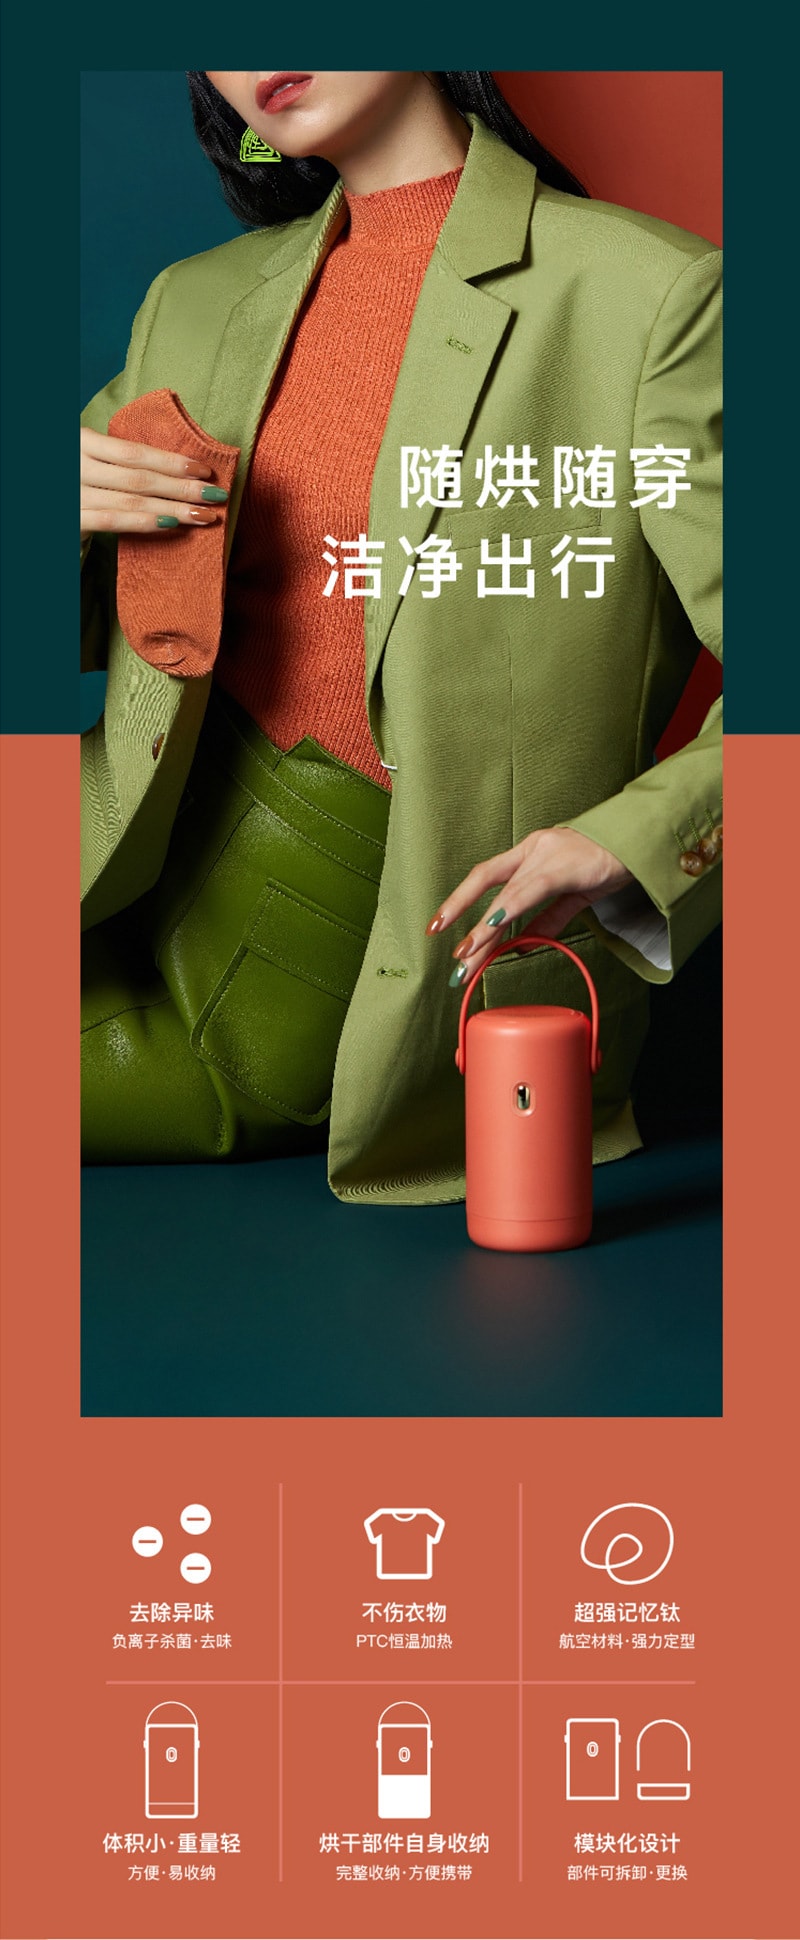 【中國直郵】小巢糖 負離子小型乾衣機靜音迷你便攜式烘乾機內衣烘乾器 森林綠